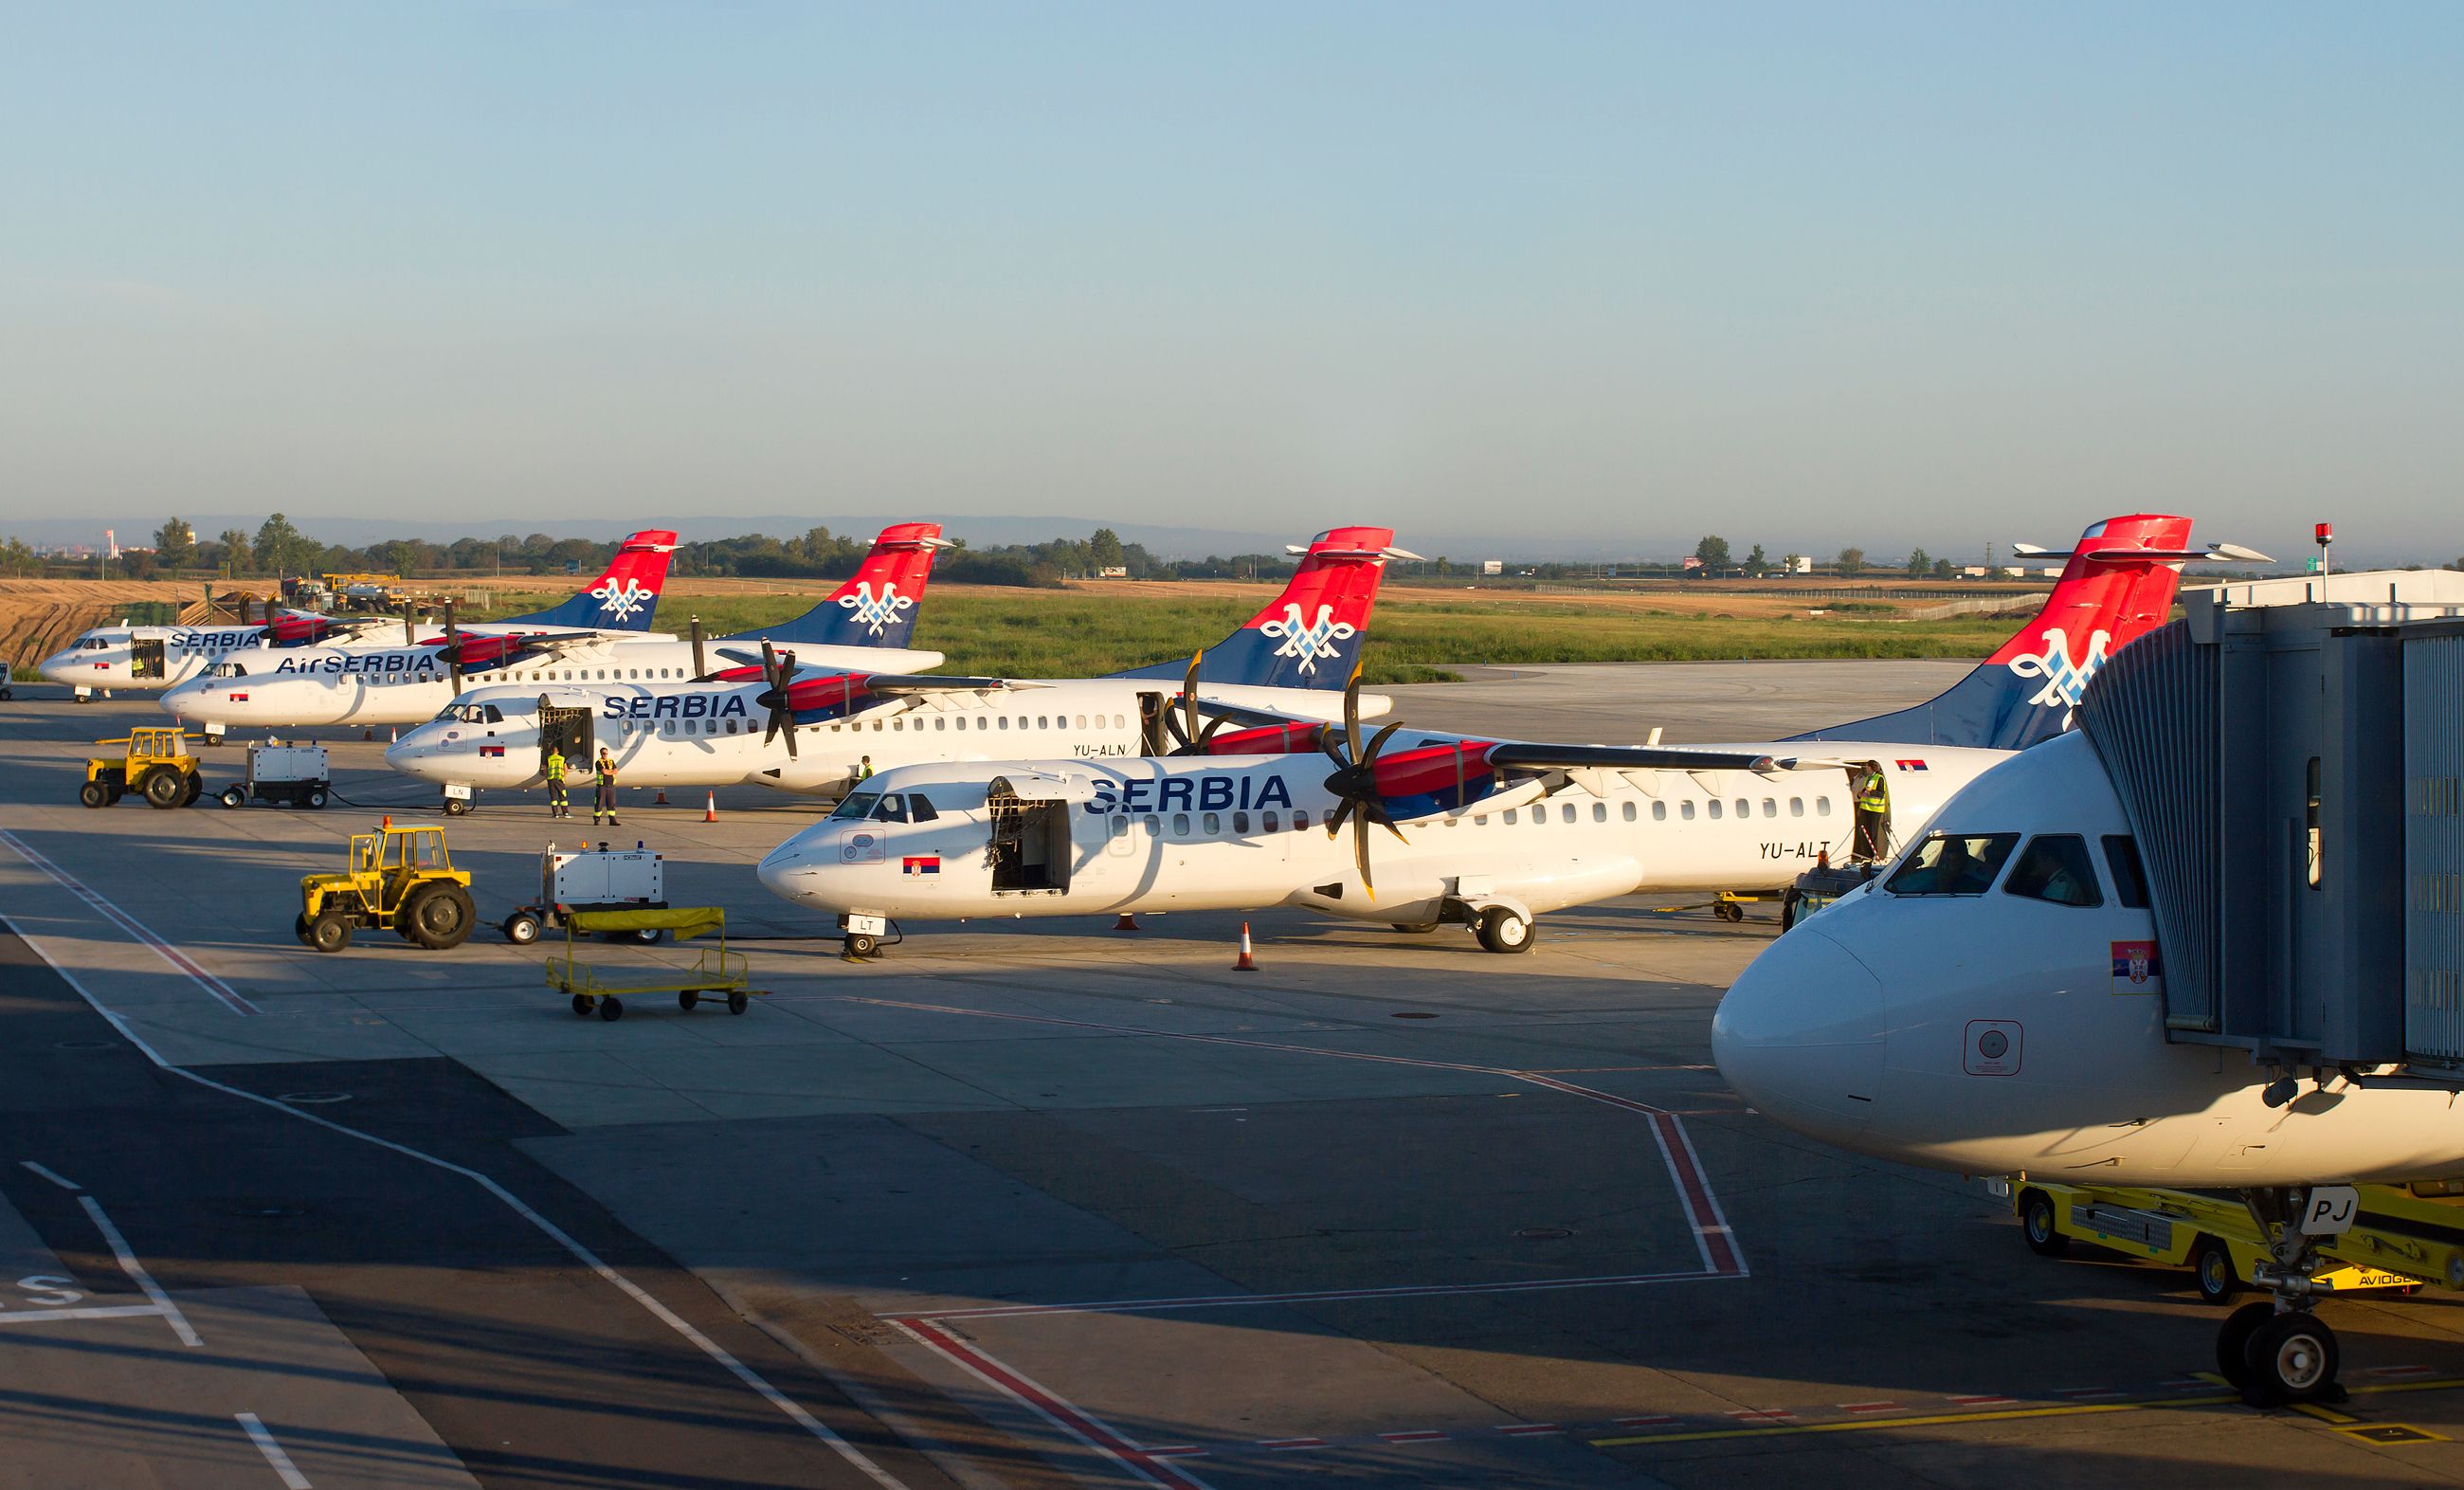 An Air Serbia aircraft fleet